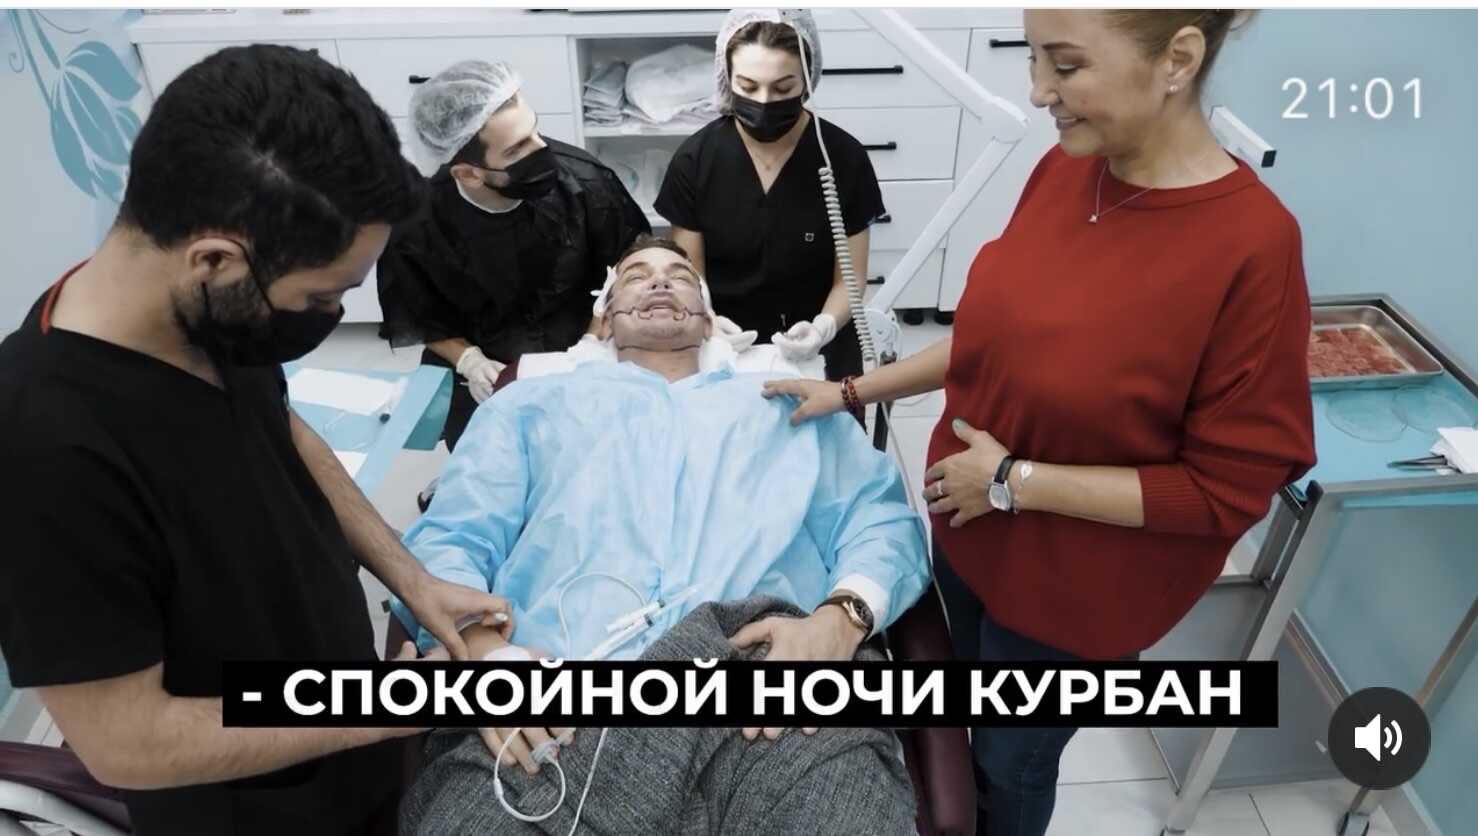 Курбан Омаров сделал пластическую операцию